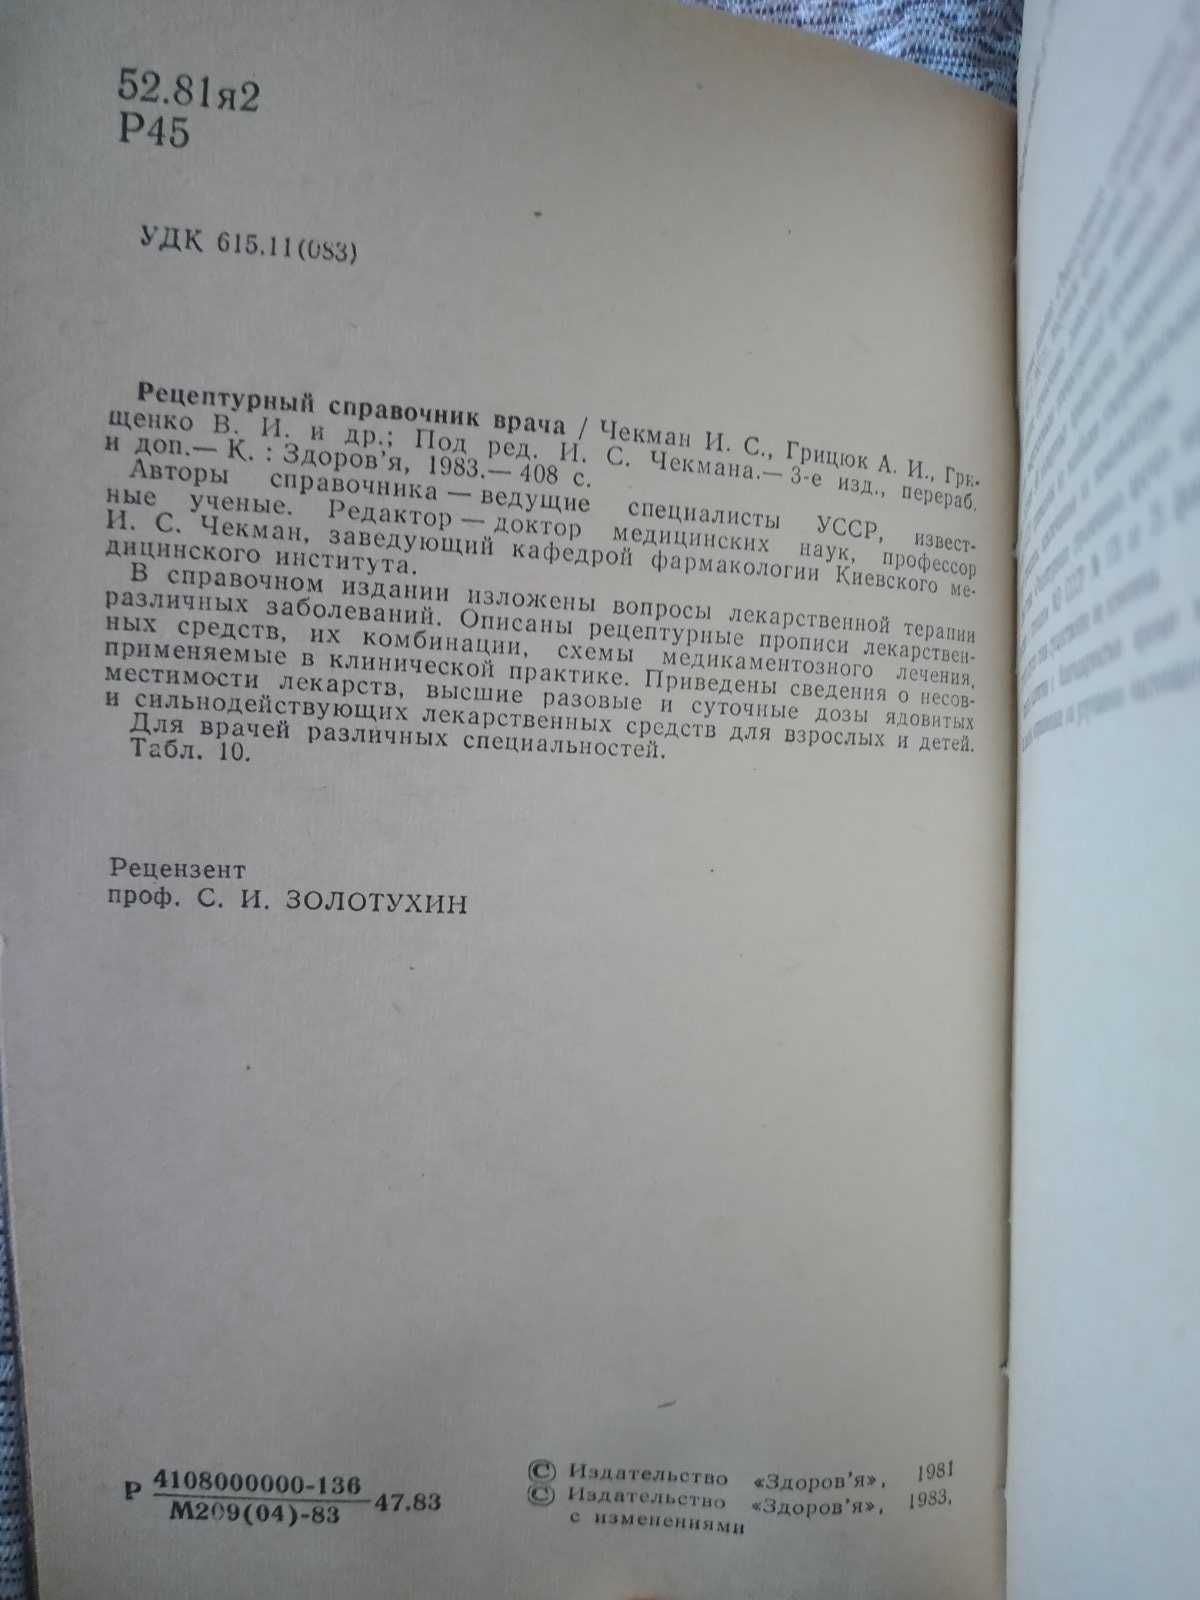 Рецептурный справочник врача. Чекмак. 1983